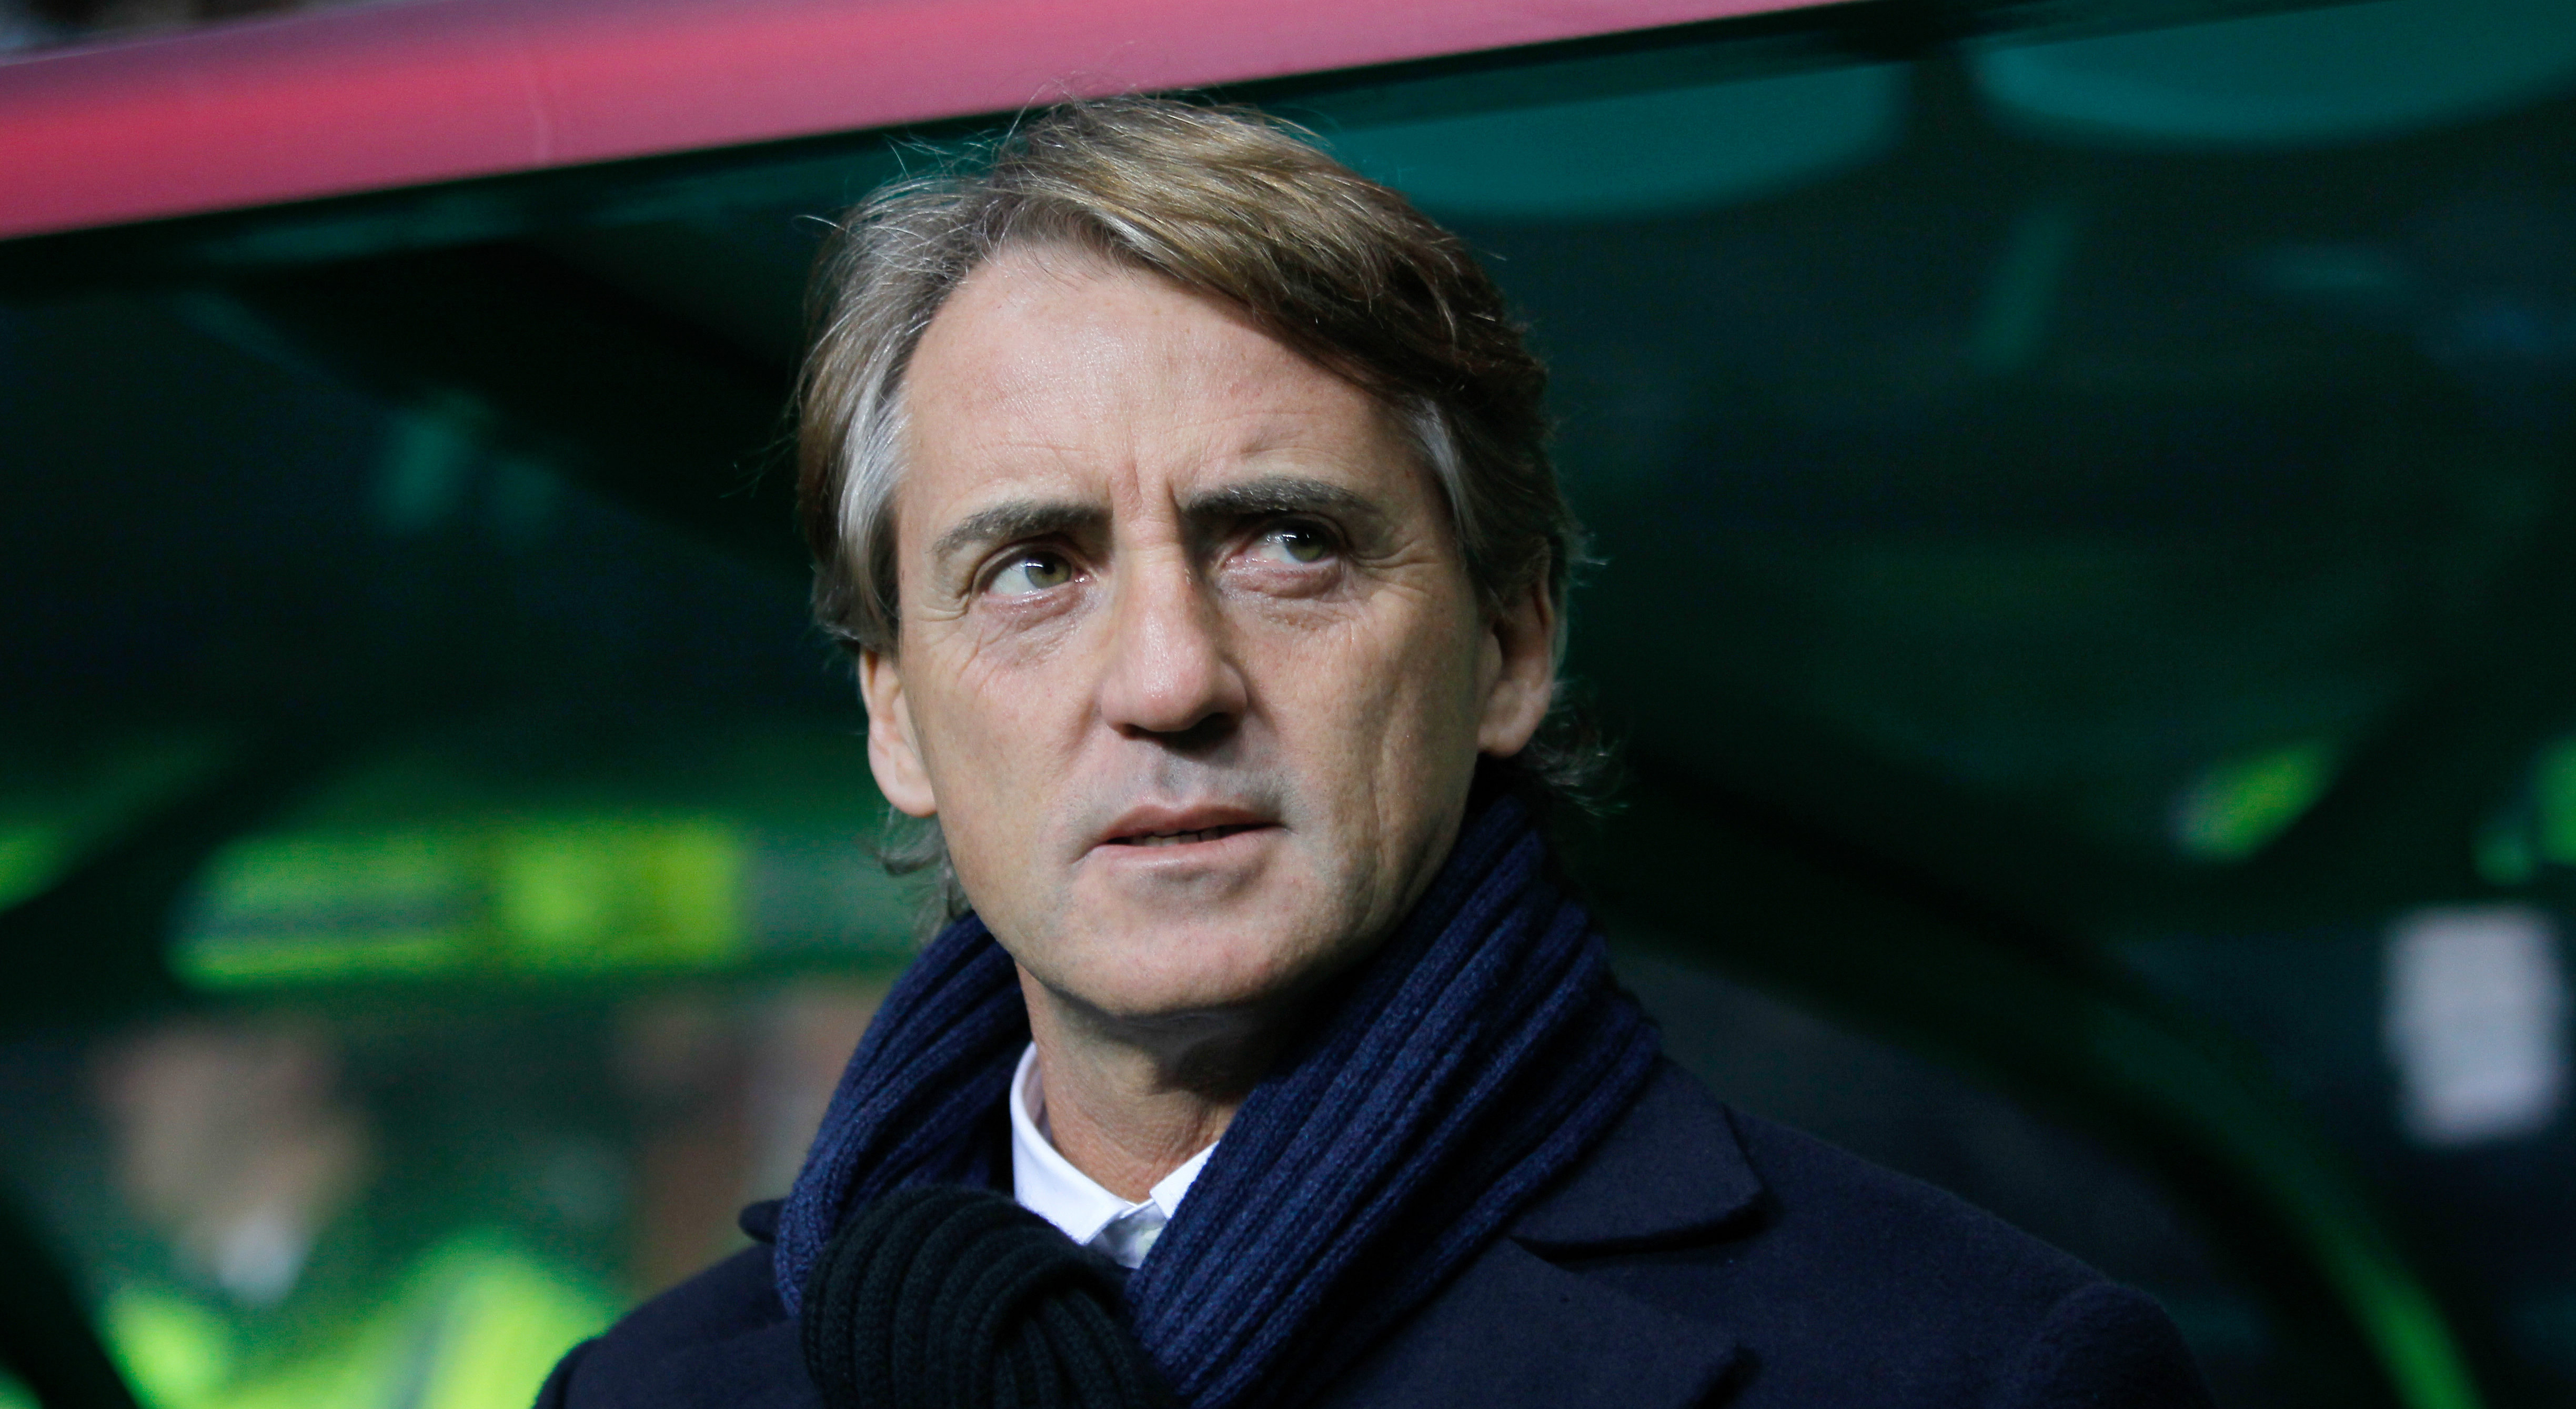 Gaat Roberto Mancini weer aan de slag na zijn ontslag bij Internazionale in augustus?